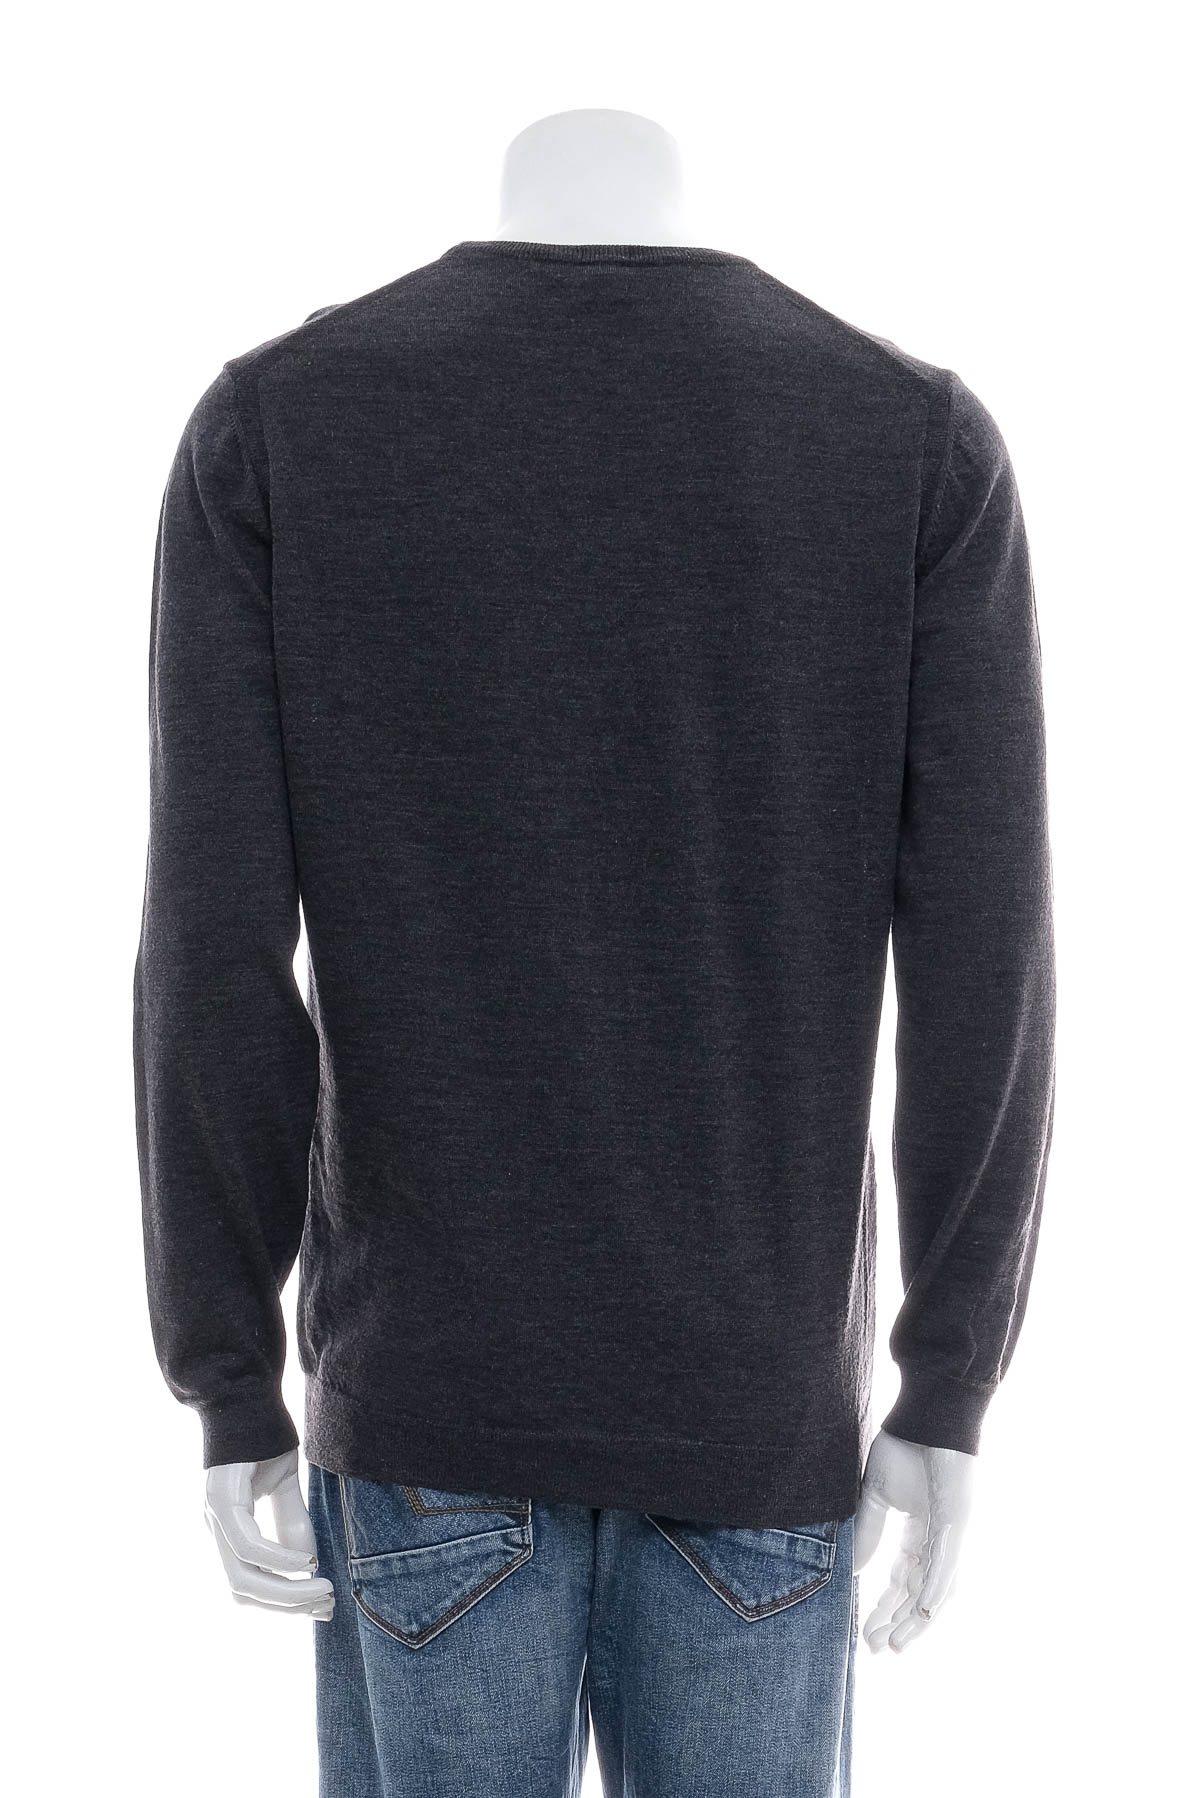 Men's sweater - HUGO BOSS - 1